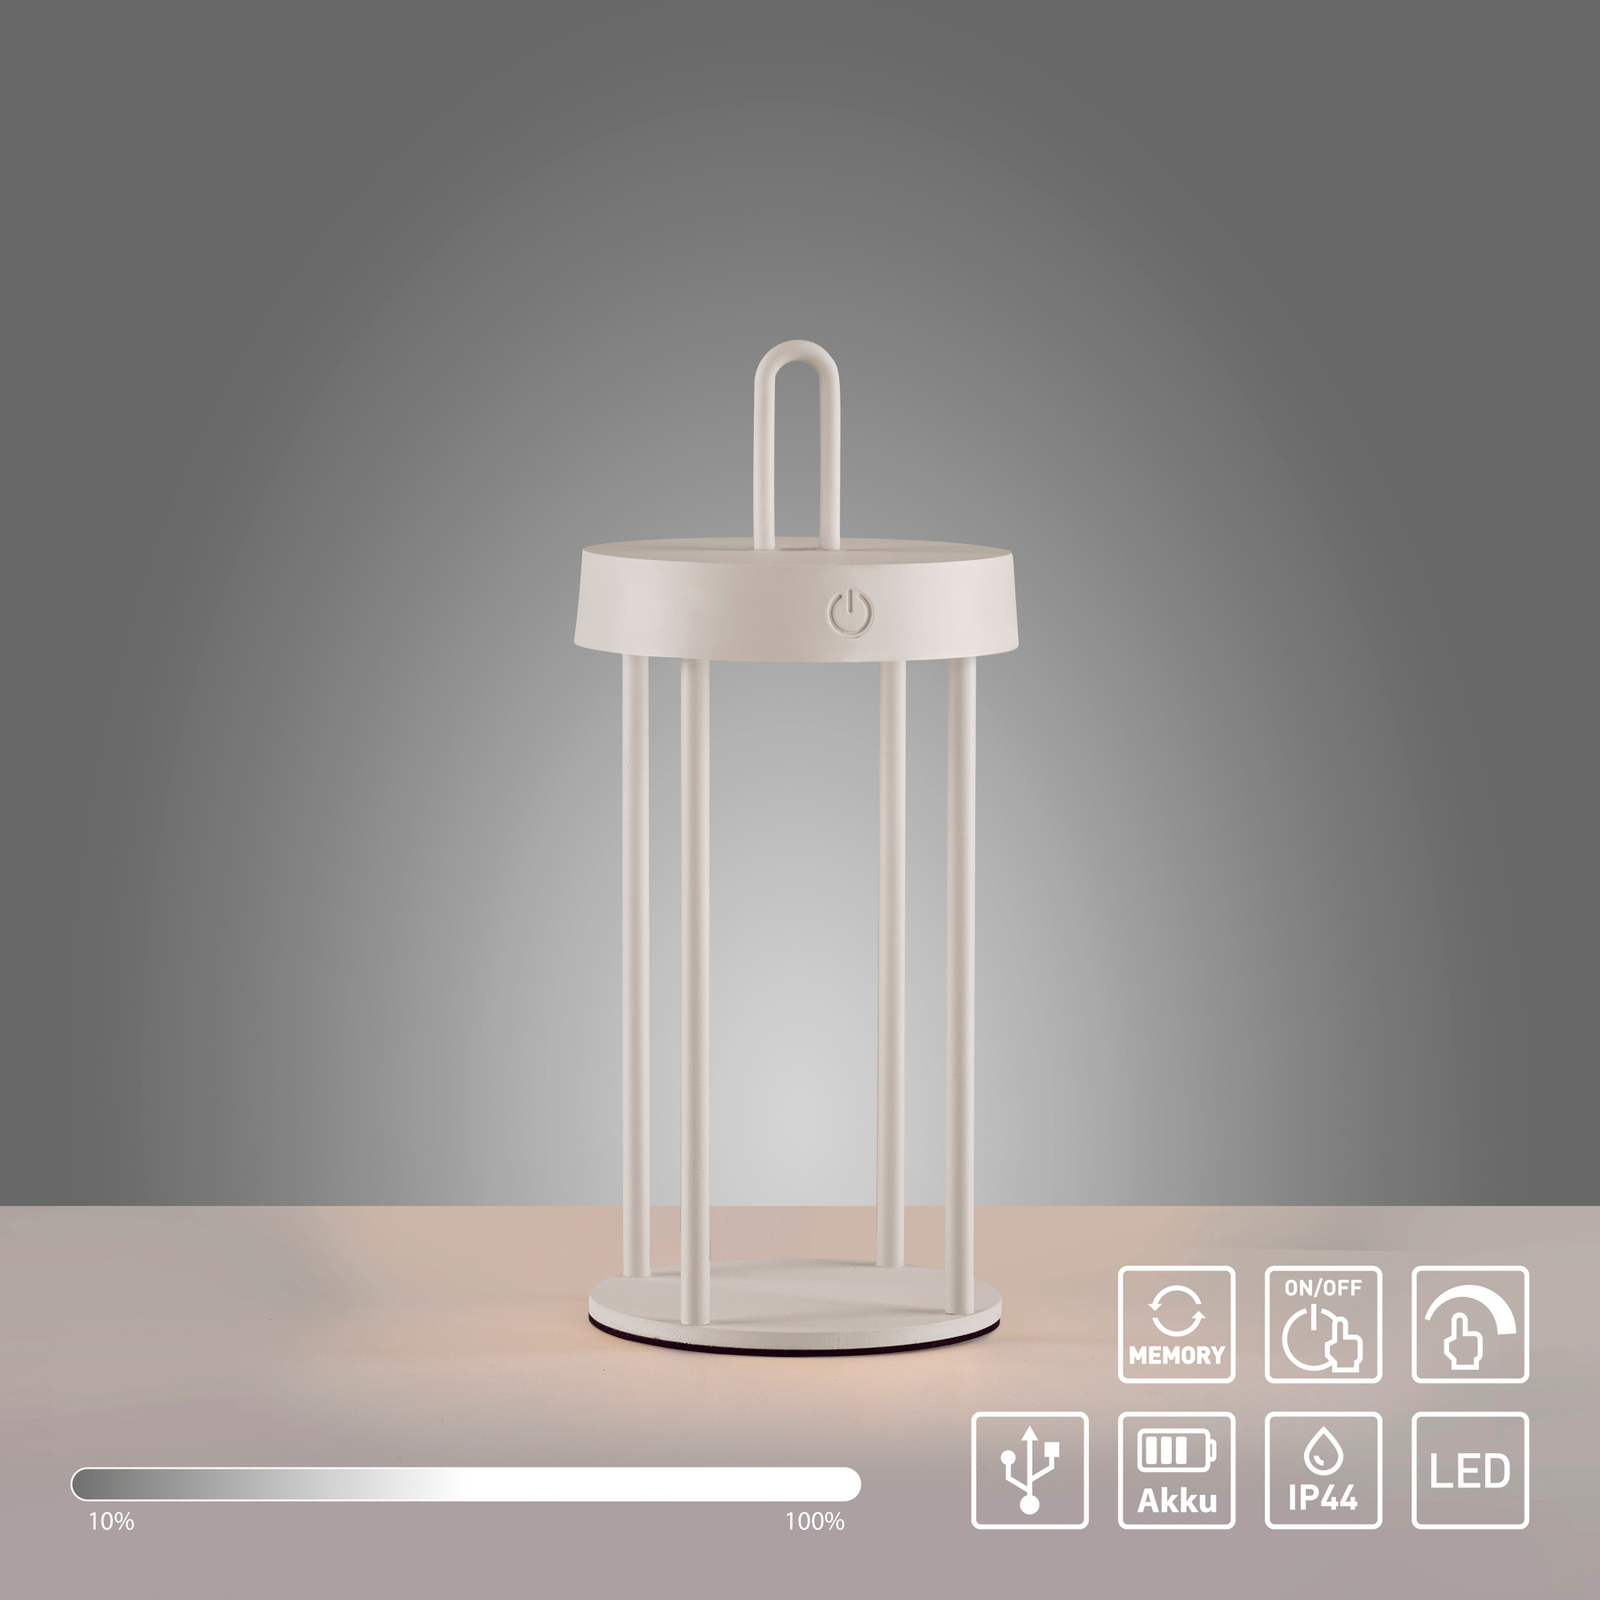 JUST LIGHT. Akumulatorowa lampa stołowa LED Anselm, biała, 28 cm, żelazo